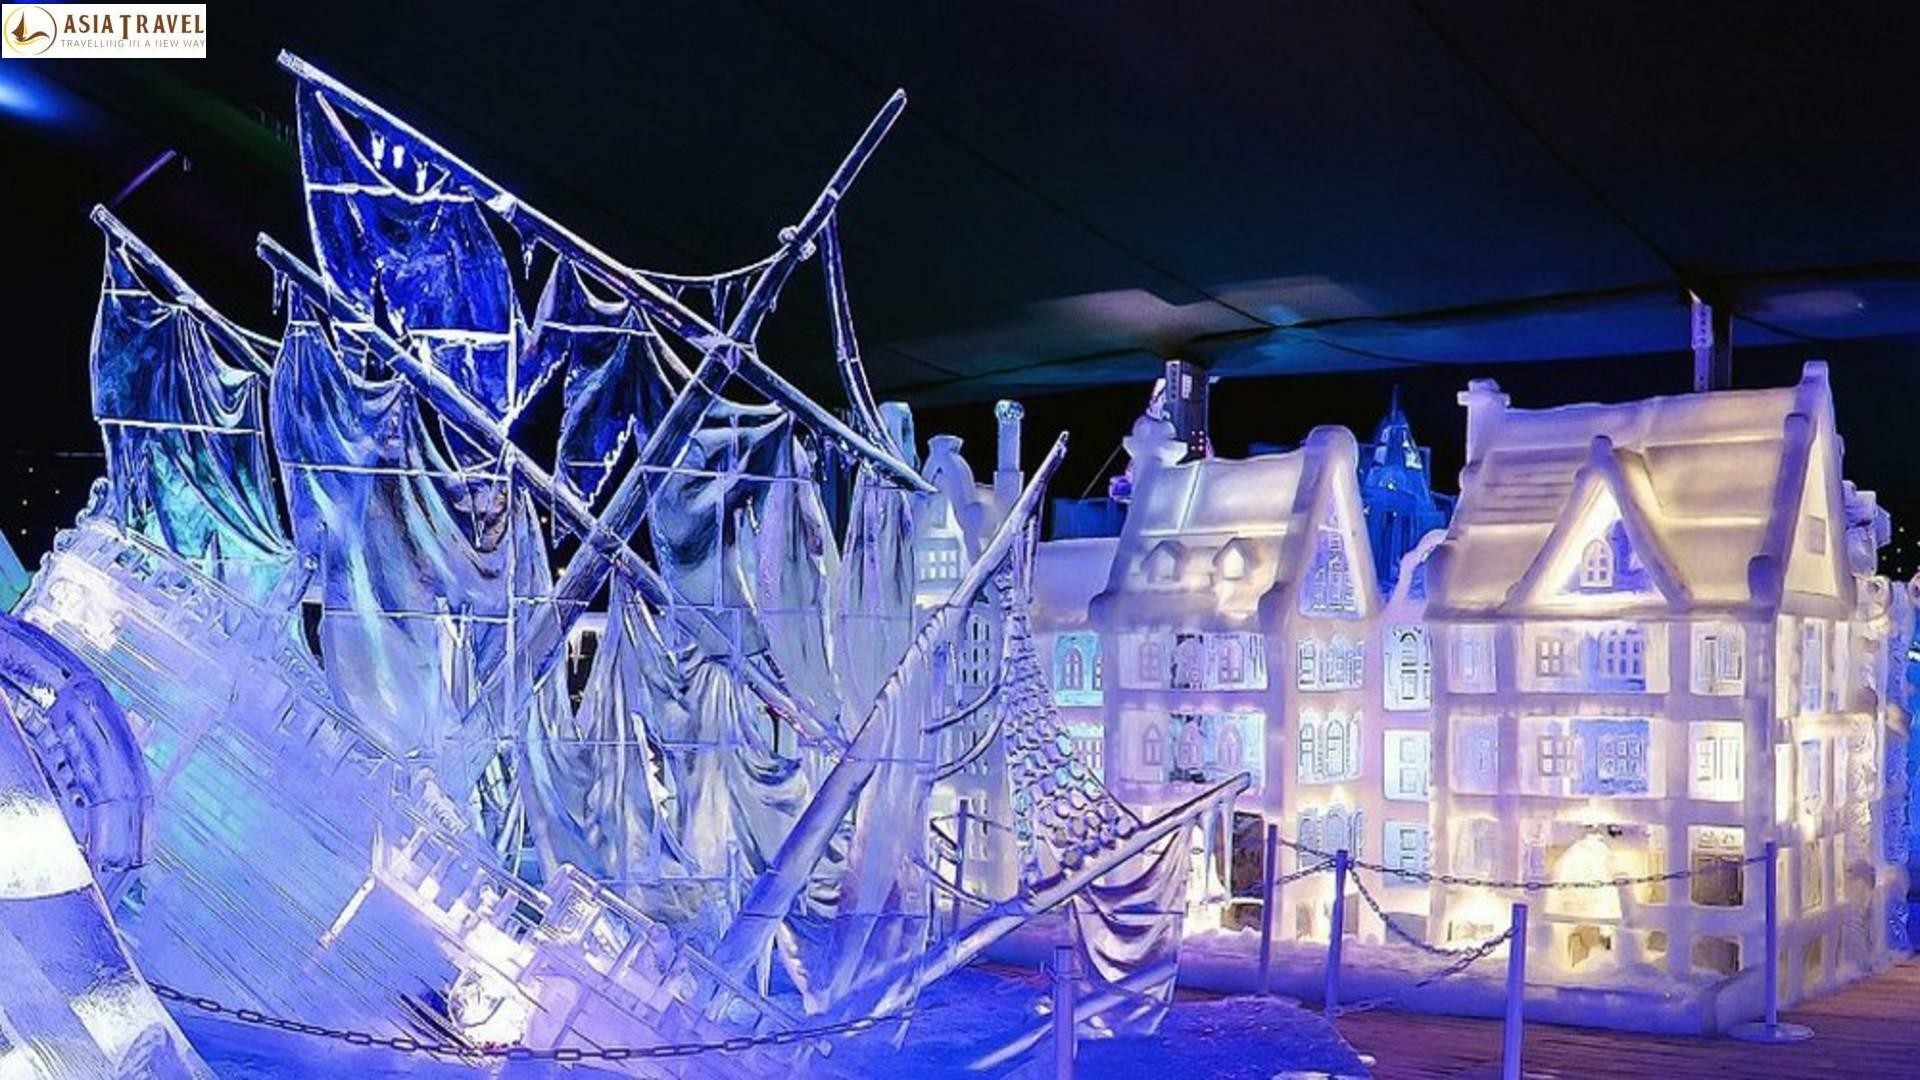 Điêu khắc trên băng ở Bruges - lễ hội sôi động, thú vị nhất mùa đông tại Bỉ